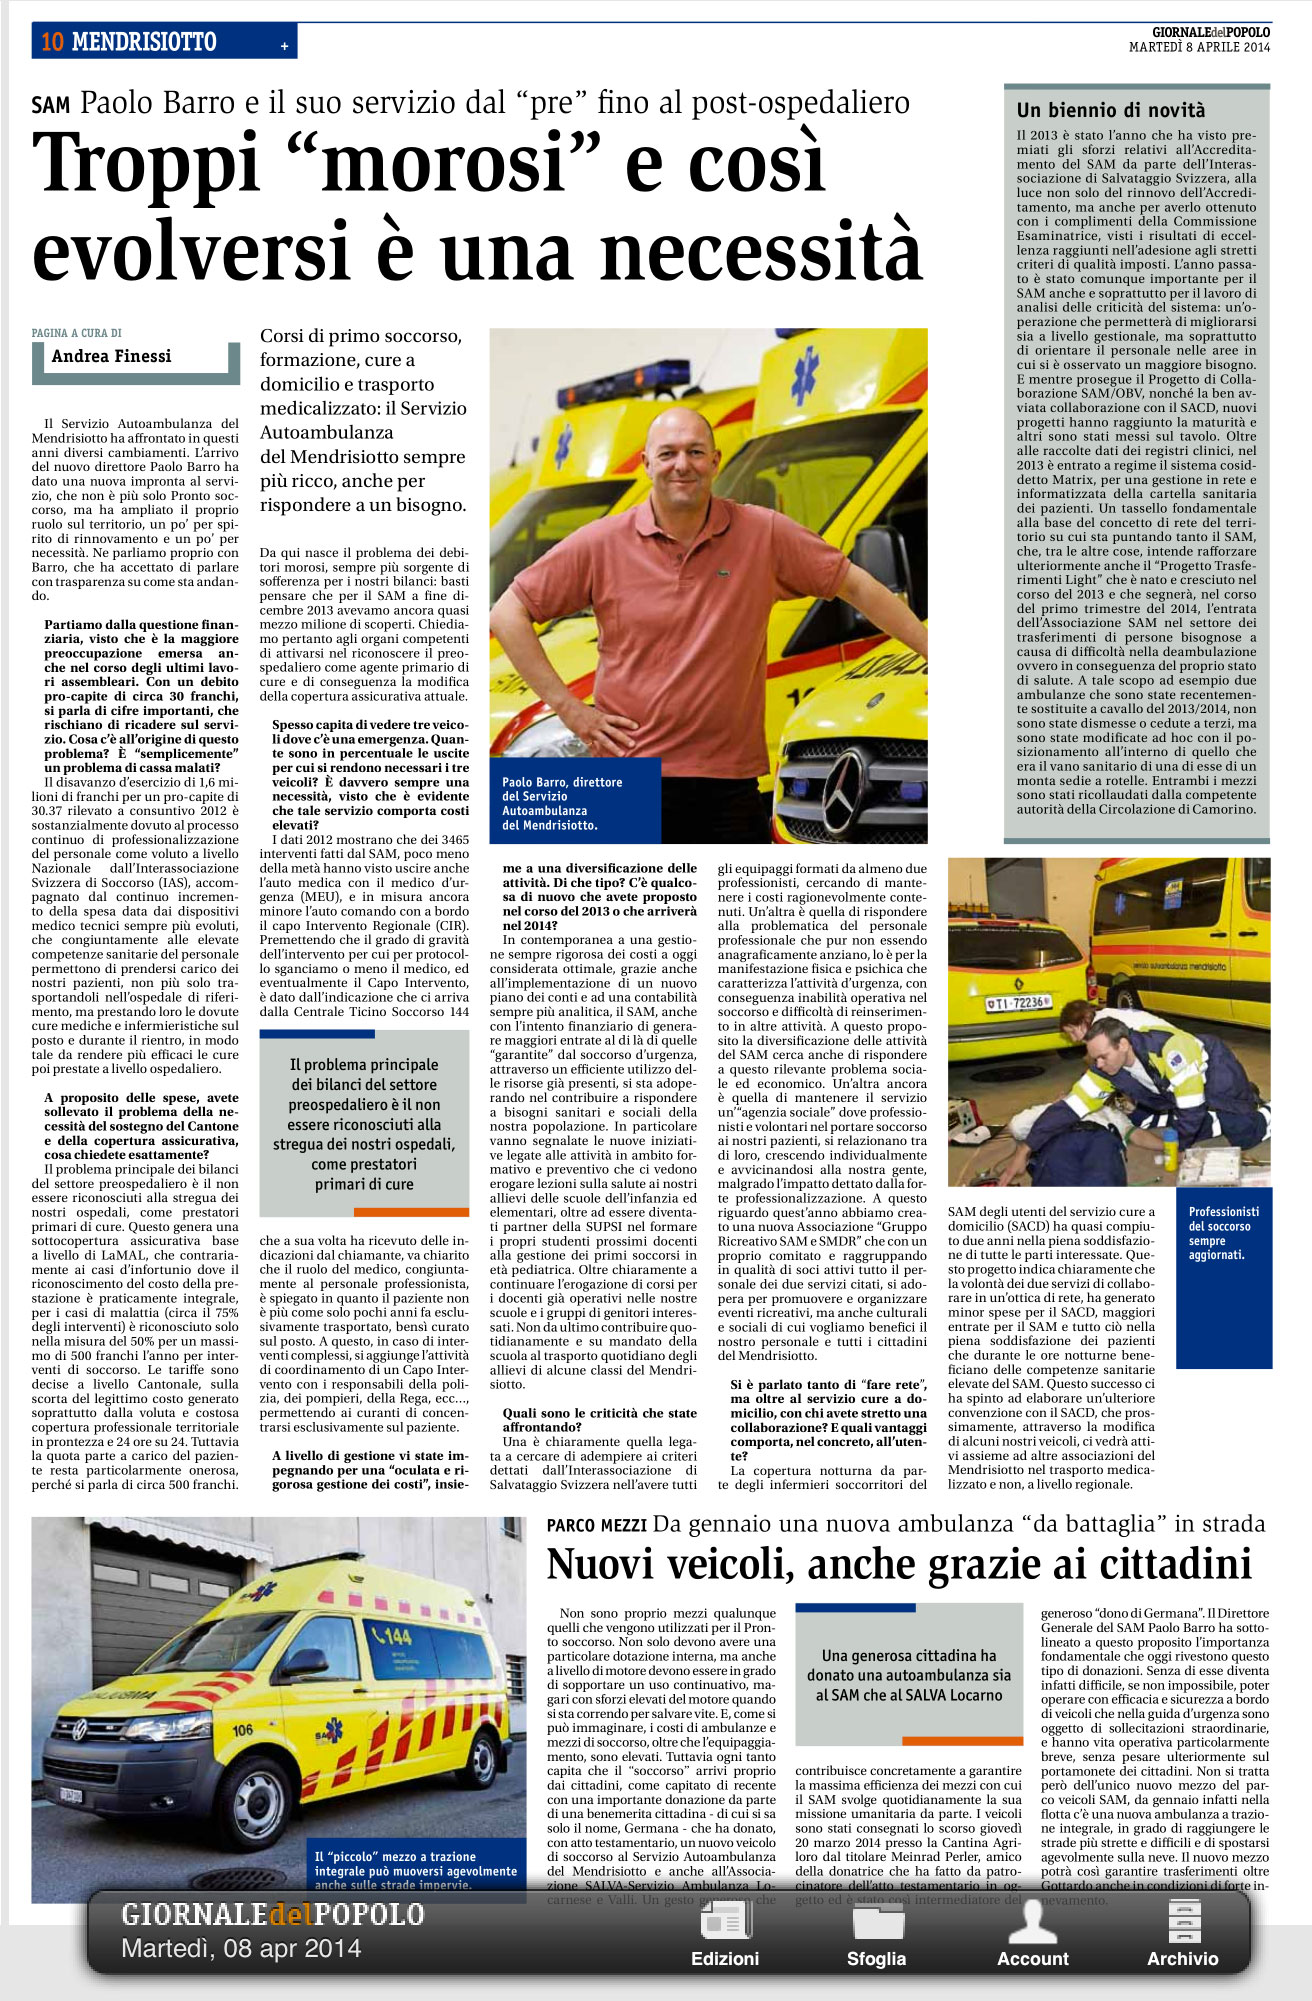 Giornale del Popolo 08.04.2014